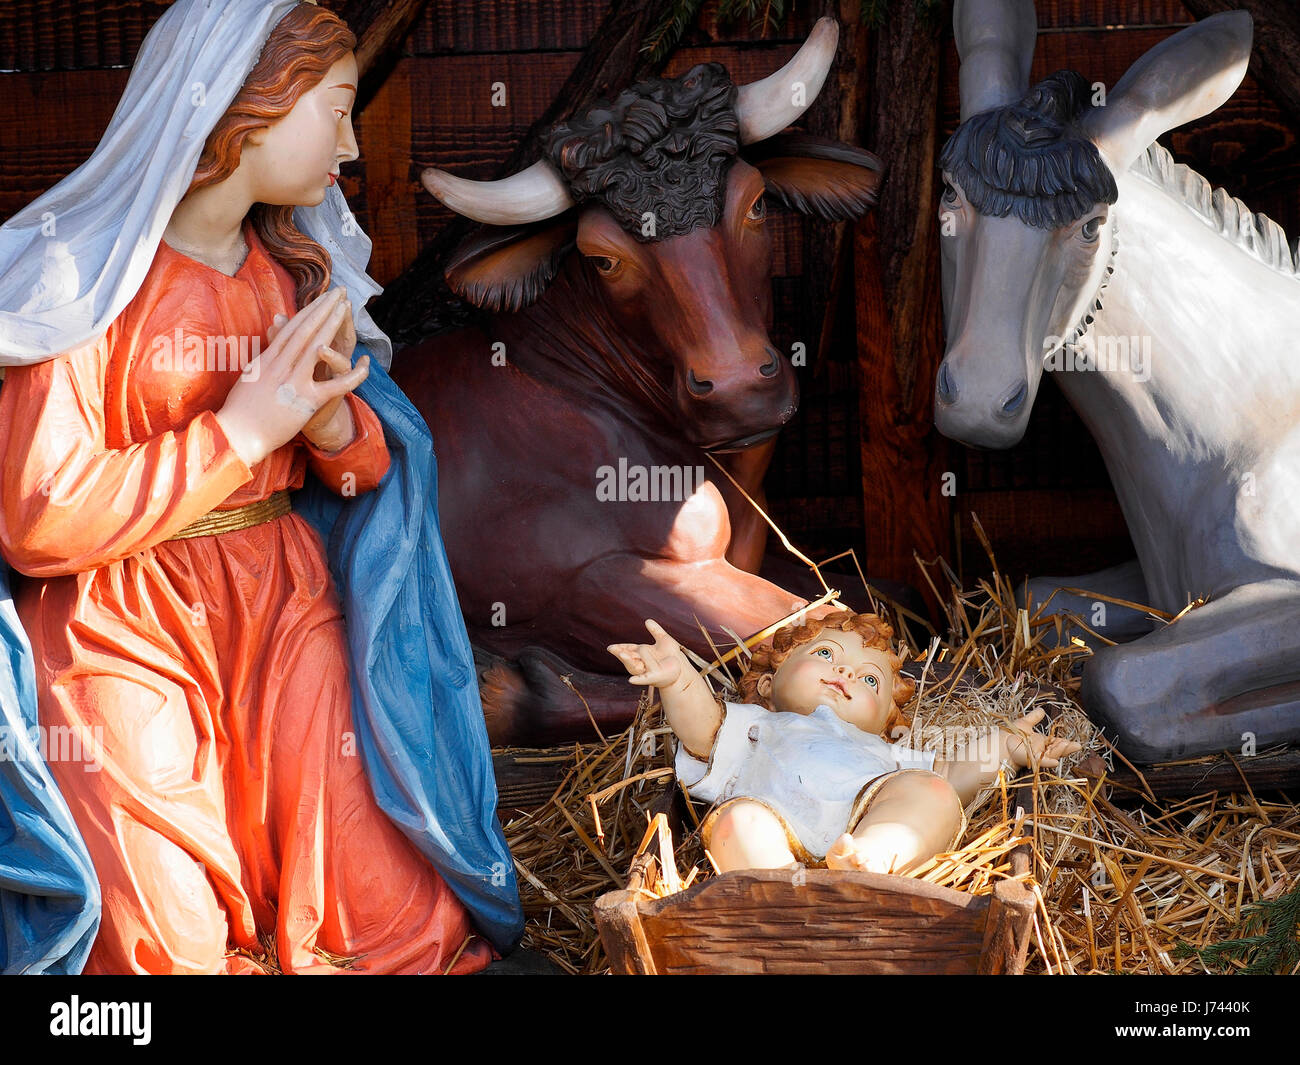 Weihnachten und Krippe-Szene mit Leben Größe Statuen der Jungfrau Maria, Jesus Child, Steuern, Esel in einem Platz. Stockfoto